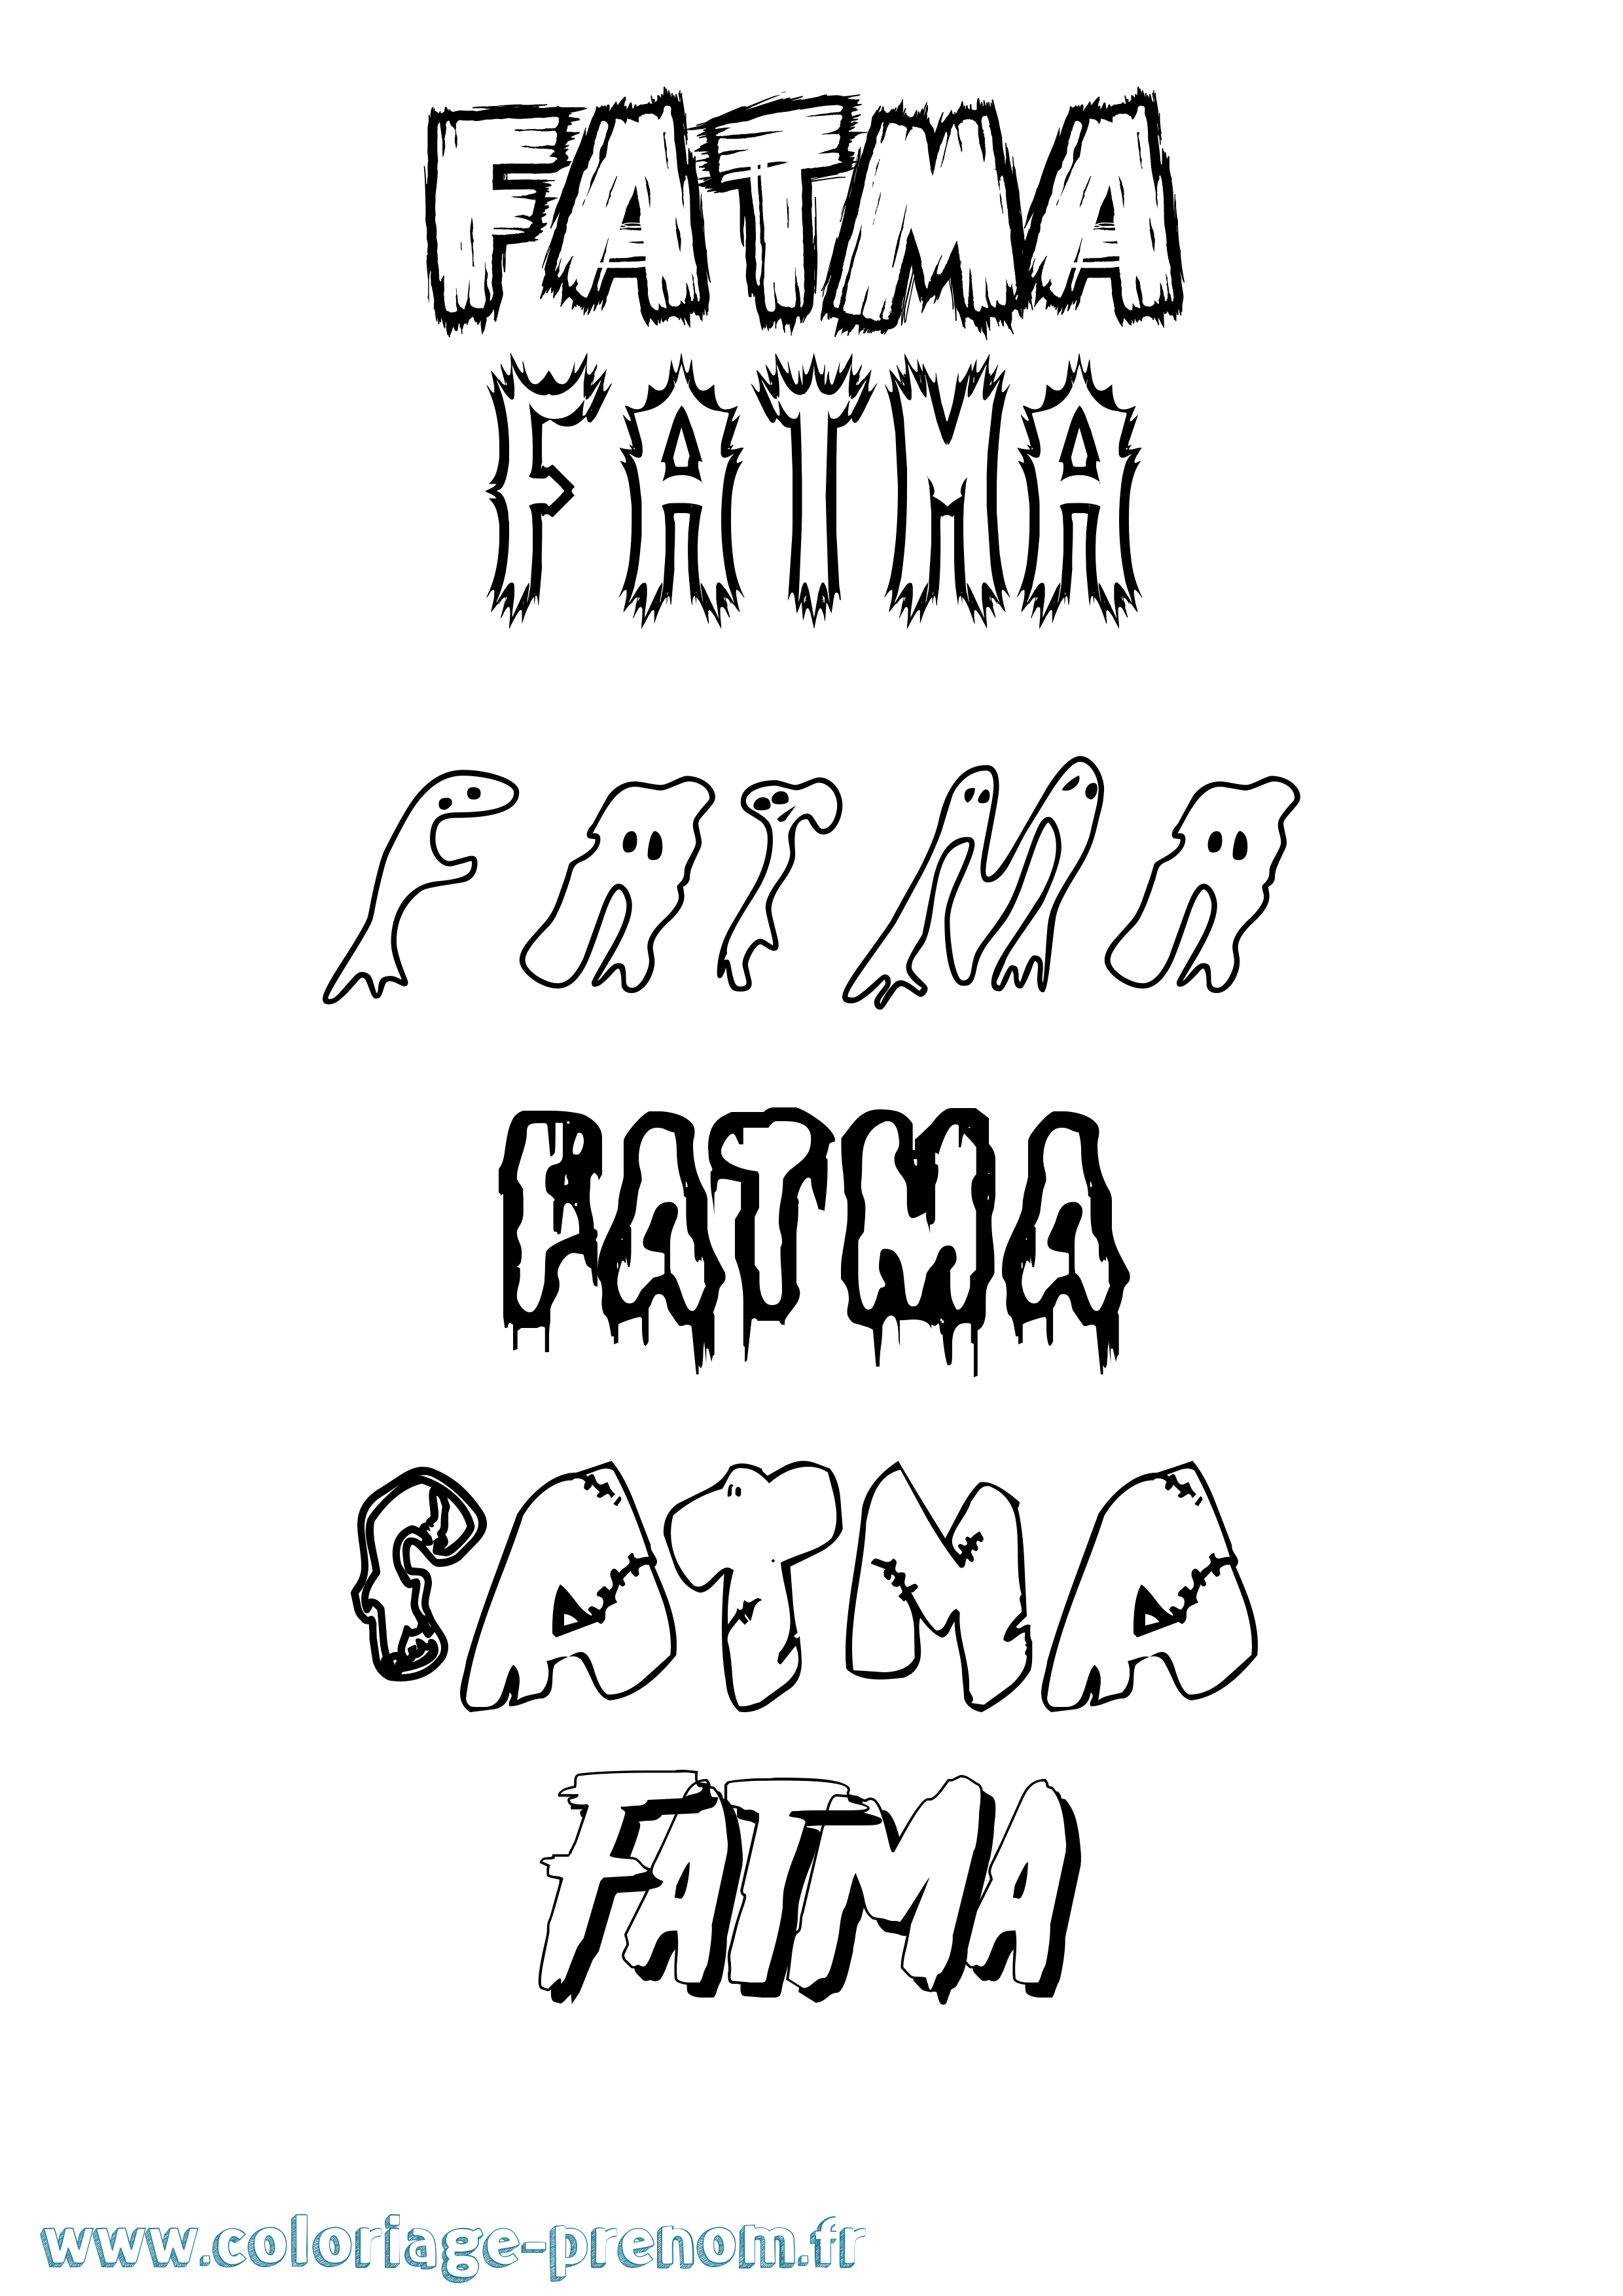 Coloriage prénom Fatma Frisson